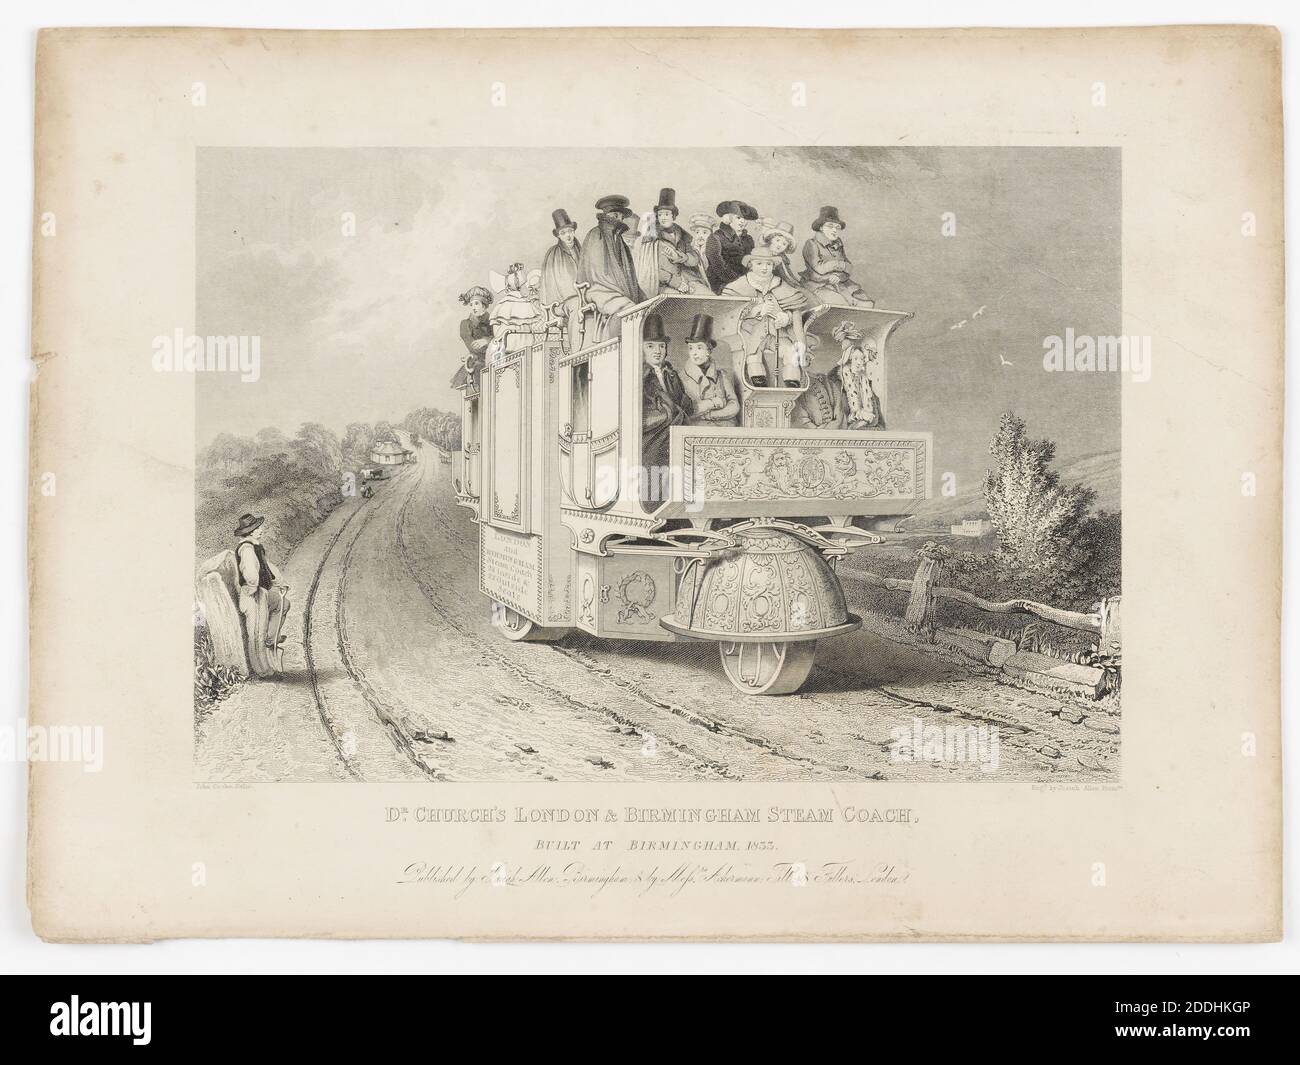 Imprimé de Steam Coach 'Dr. Church's London & Birmingham Steam Coach, construit à Birmingham, 1833.' Gravé par Josiah Allen, vues topographiques, transport, impression, gravure, histoire de Birmingham Banque D'Images